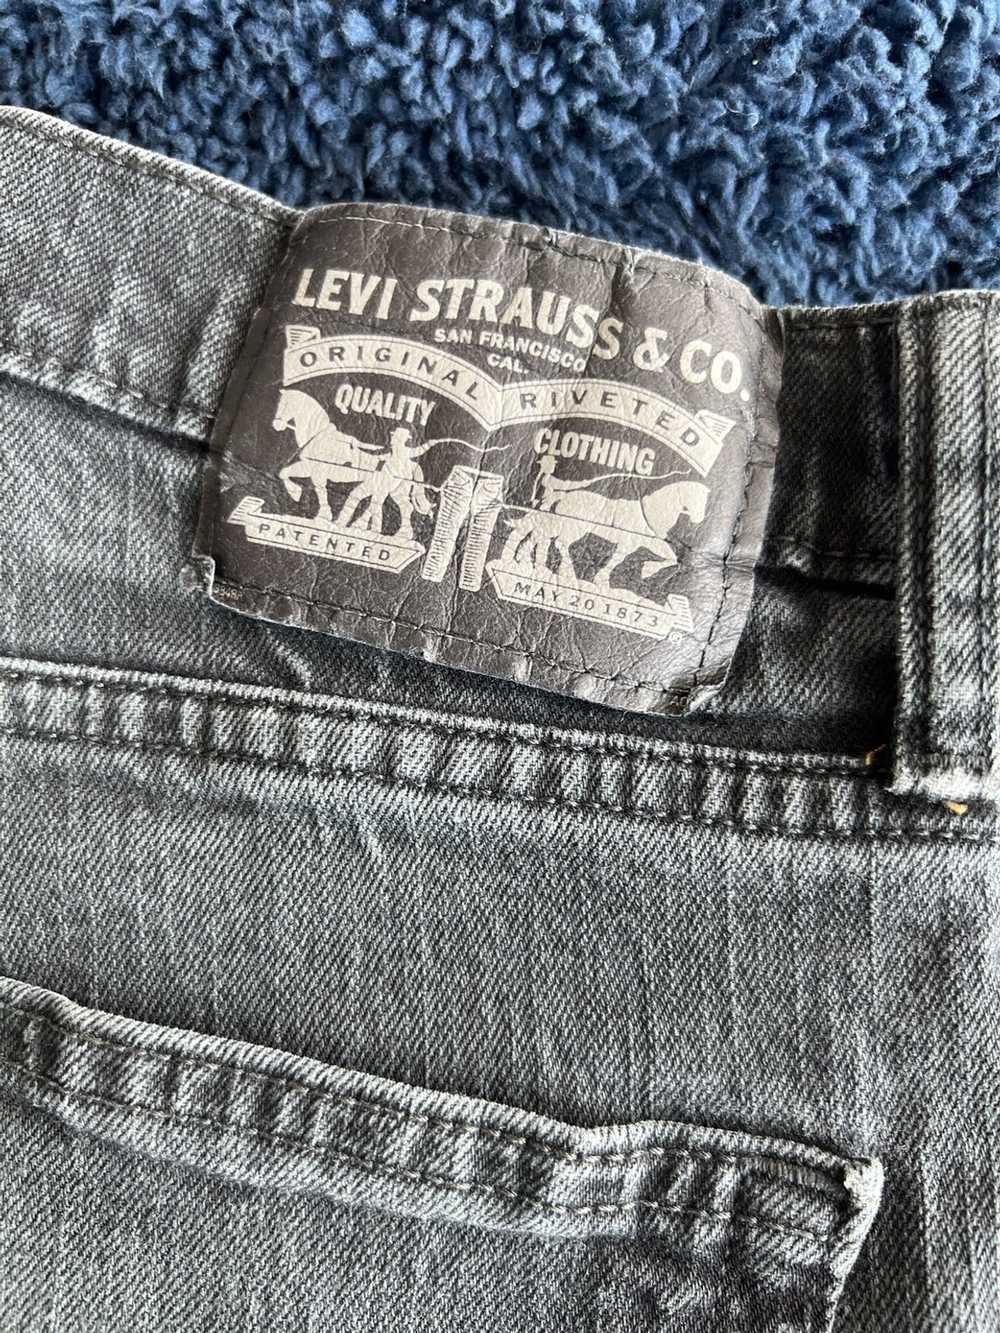 Levi's Black Vintage Levi’s Jeans - image 4